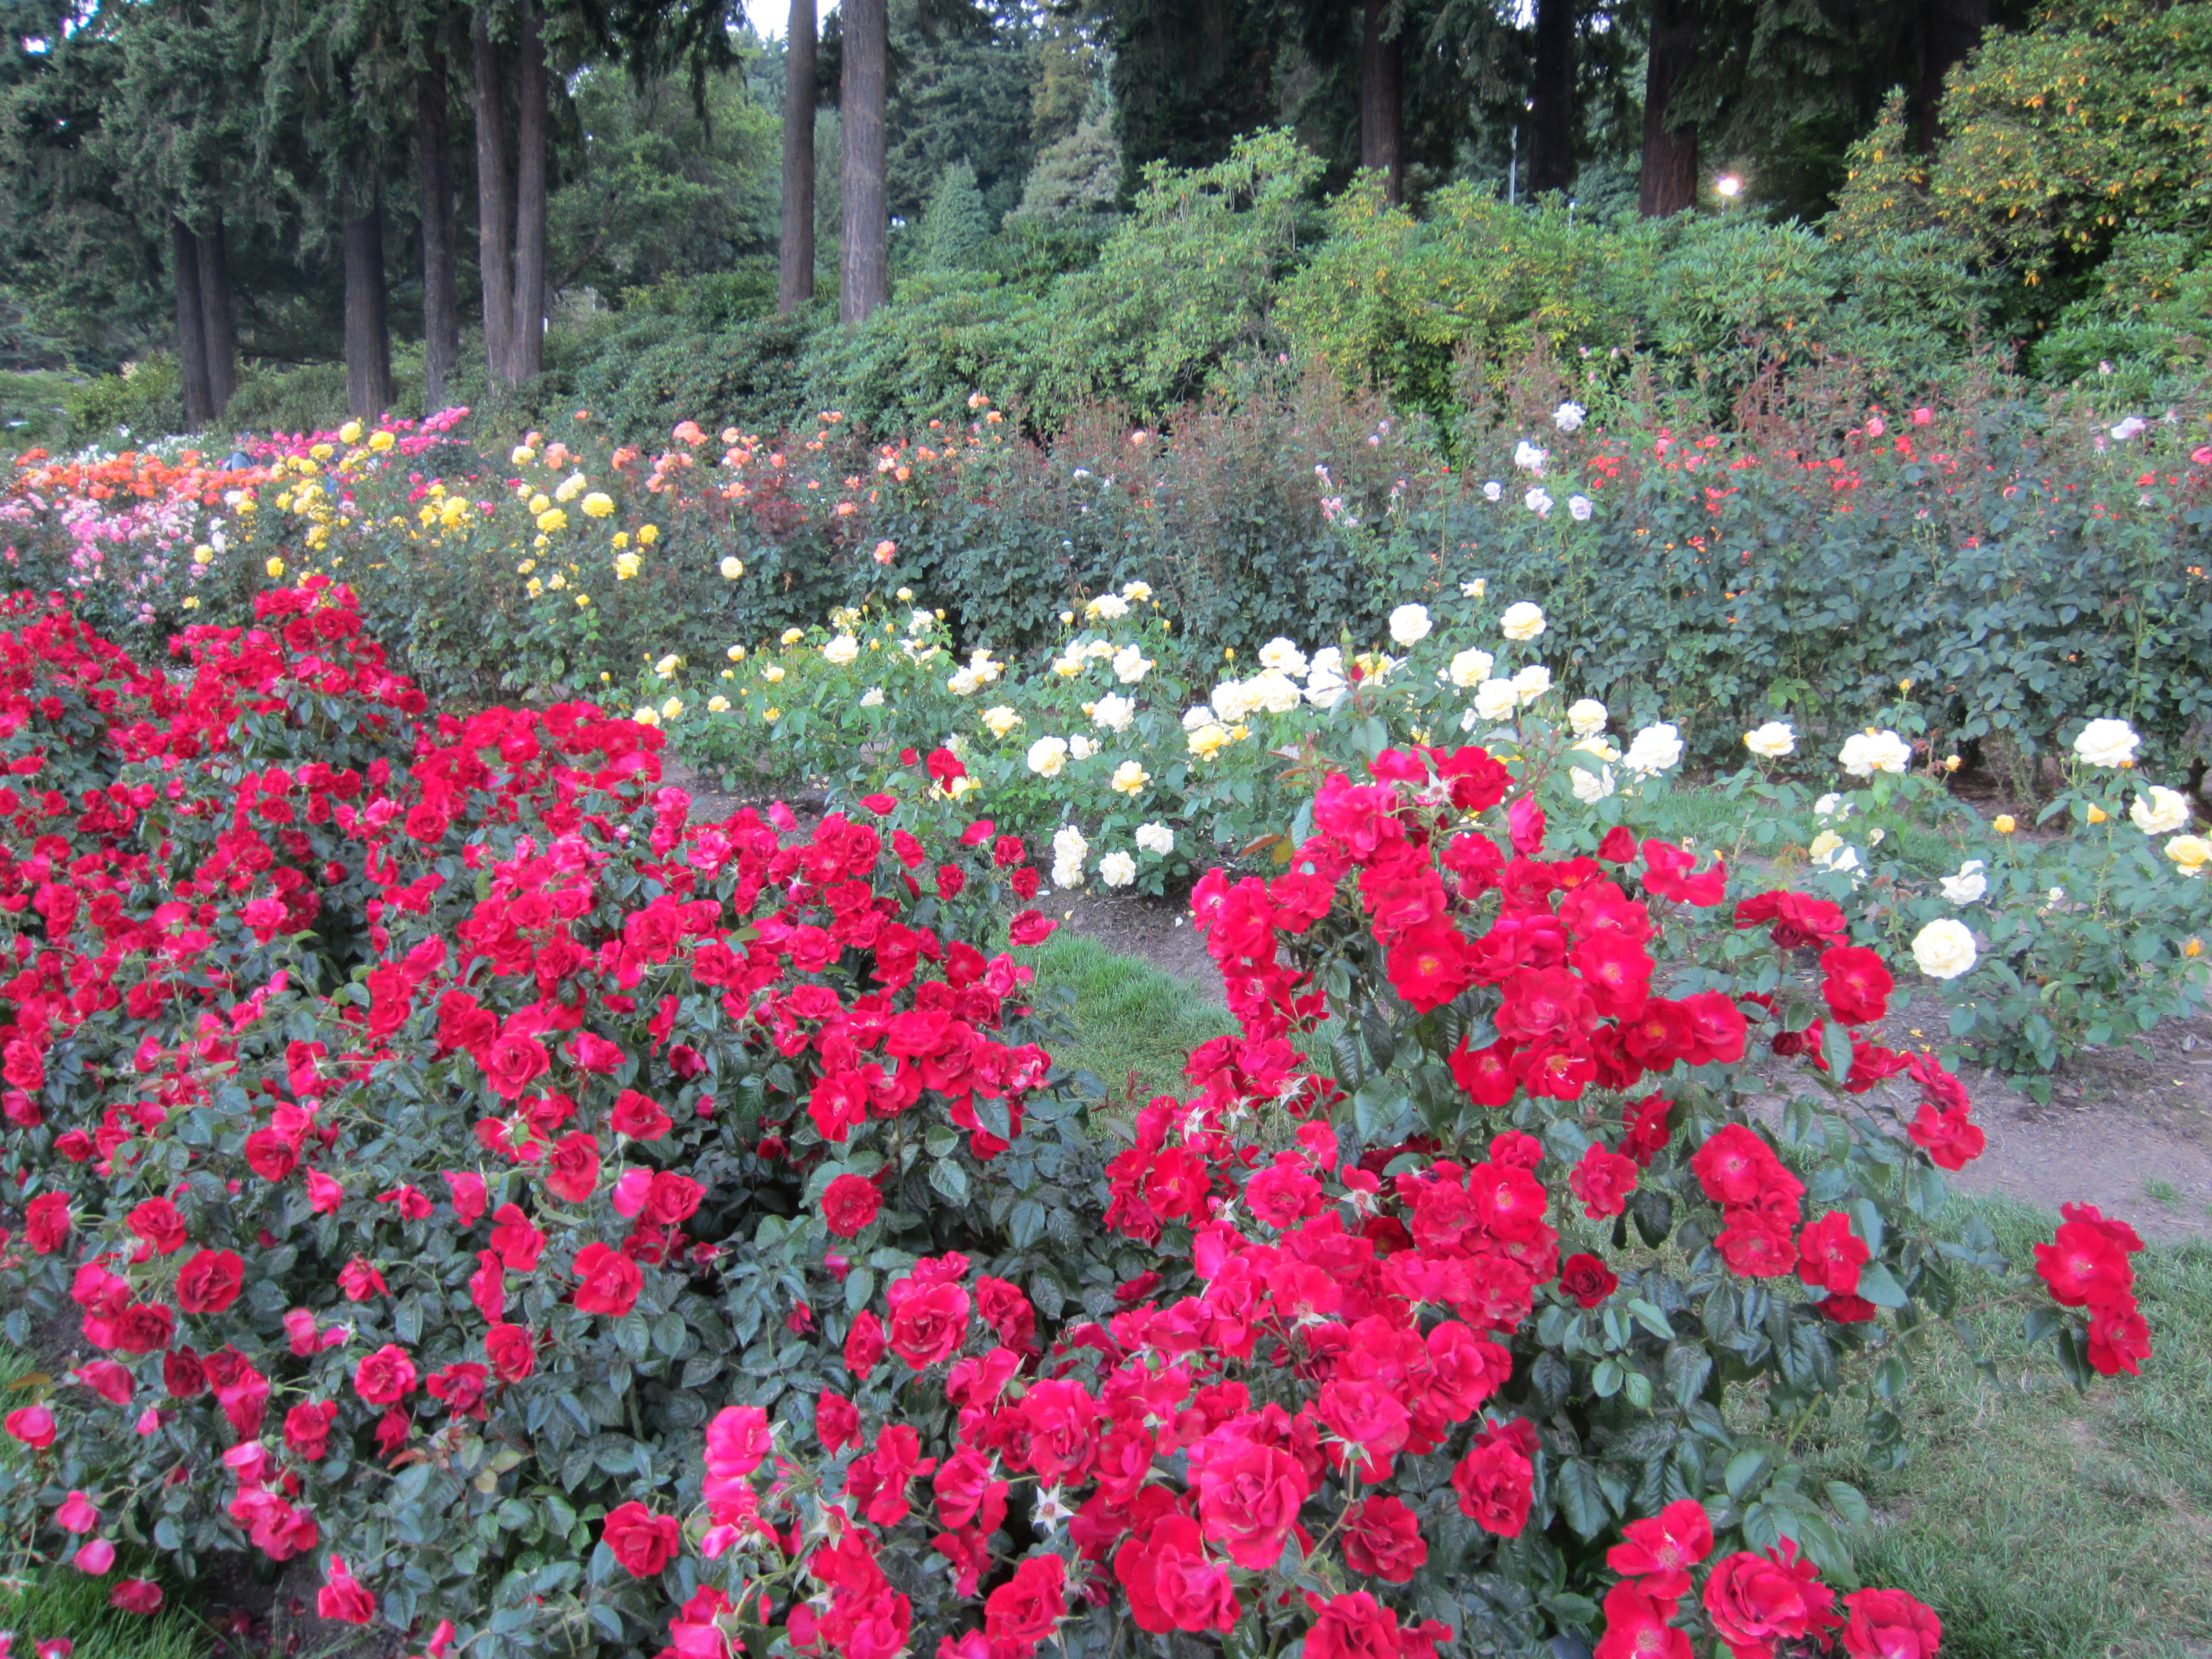 International Rose Test Garden in Portland, Ore. (2013) - 02.JPG